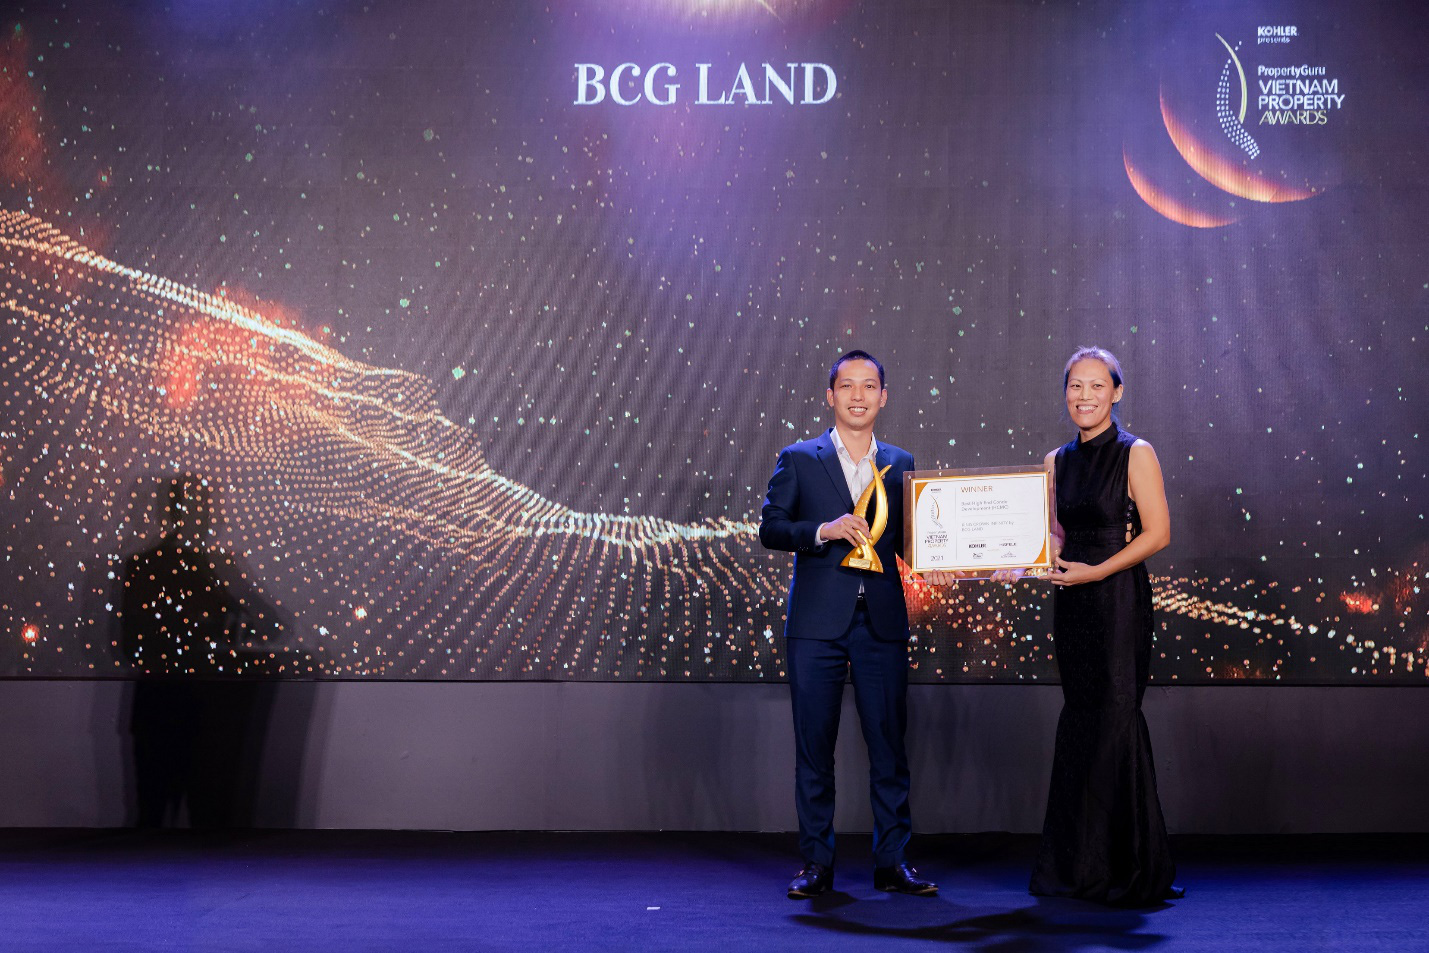 Dự án King Crown Infinity được vinh danh tại “PropertyGuru Vietnam Property Awards 2021” - Ảnh 1.